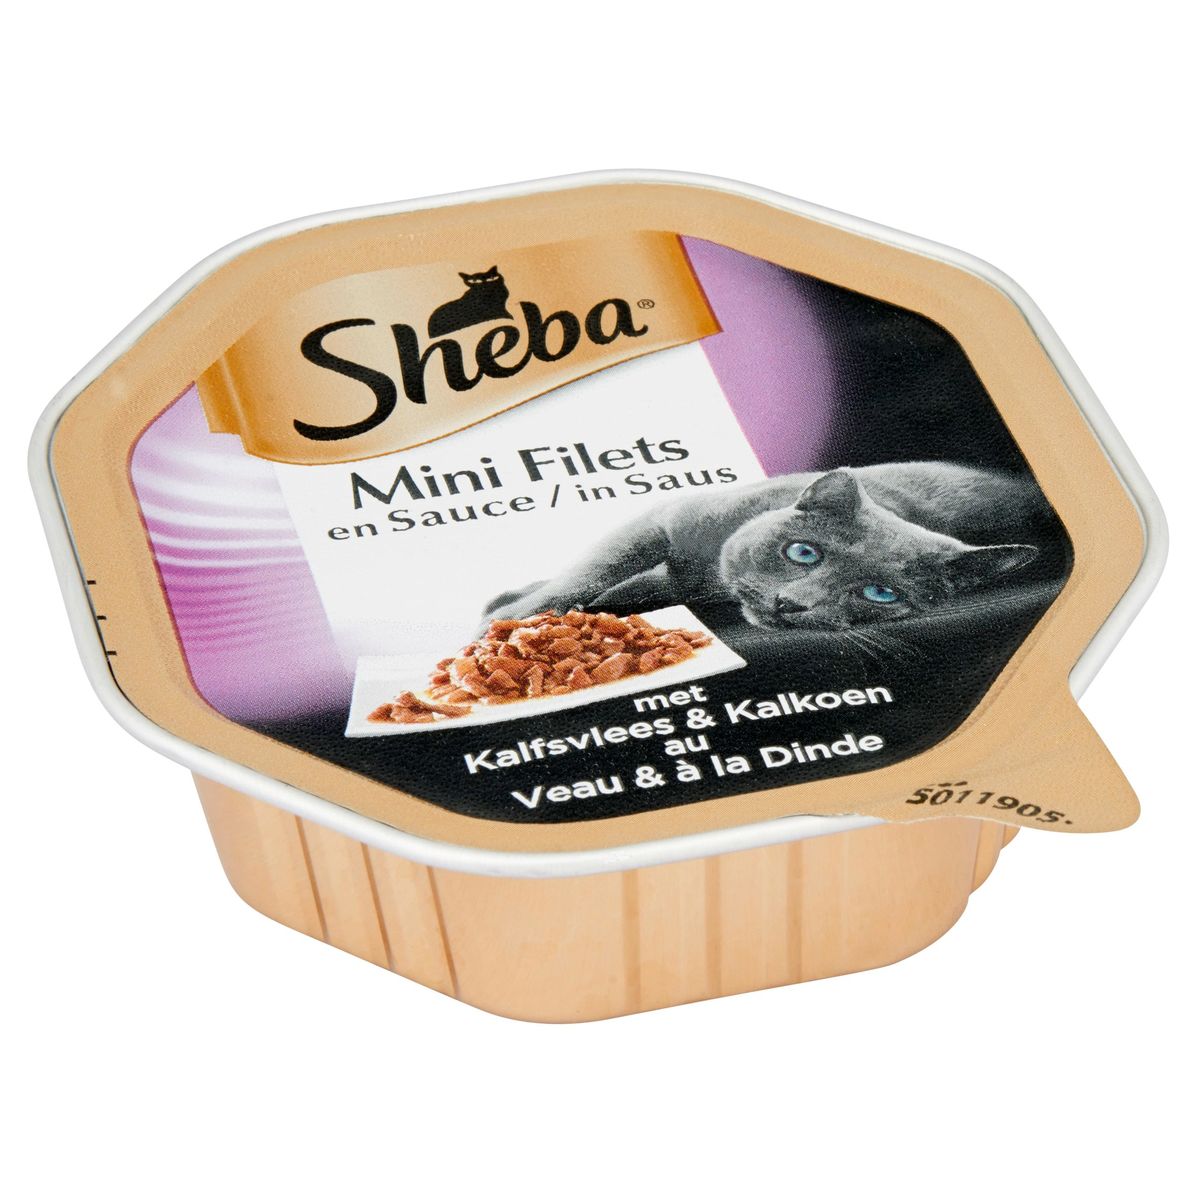 Sheba Mini Filets Barquette en Sauce Veau & à la Dinde 85 g